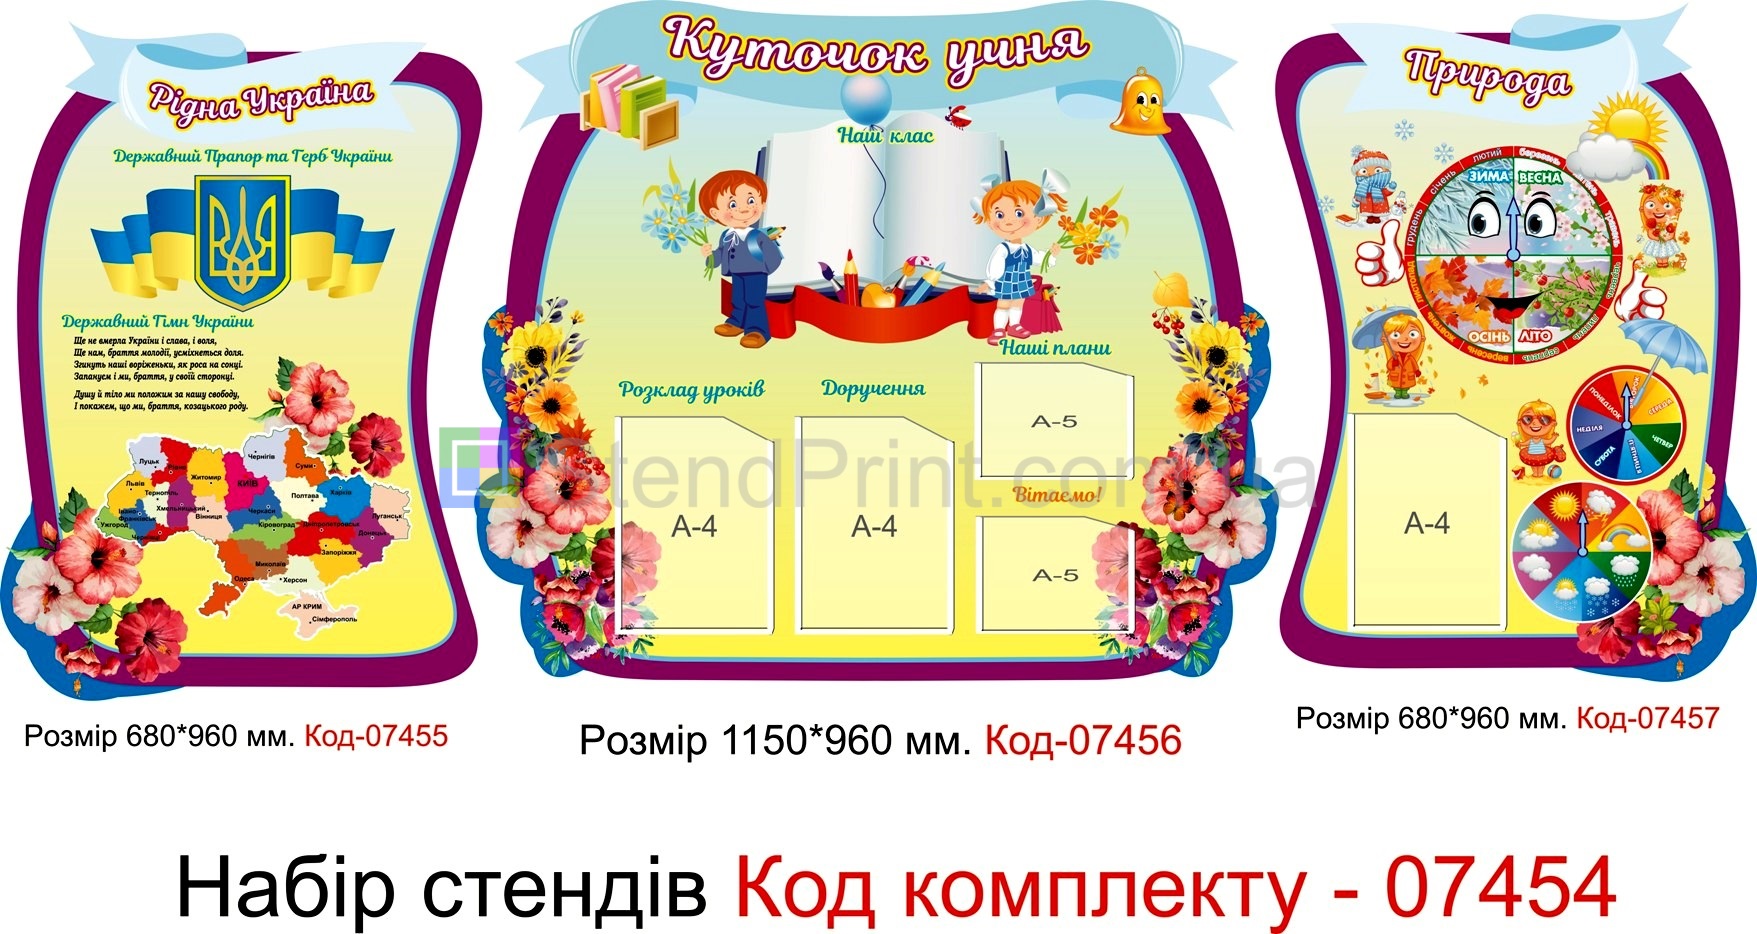 Комплект стендів "Рідна Україна" для початкових класів